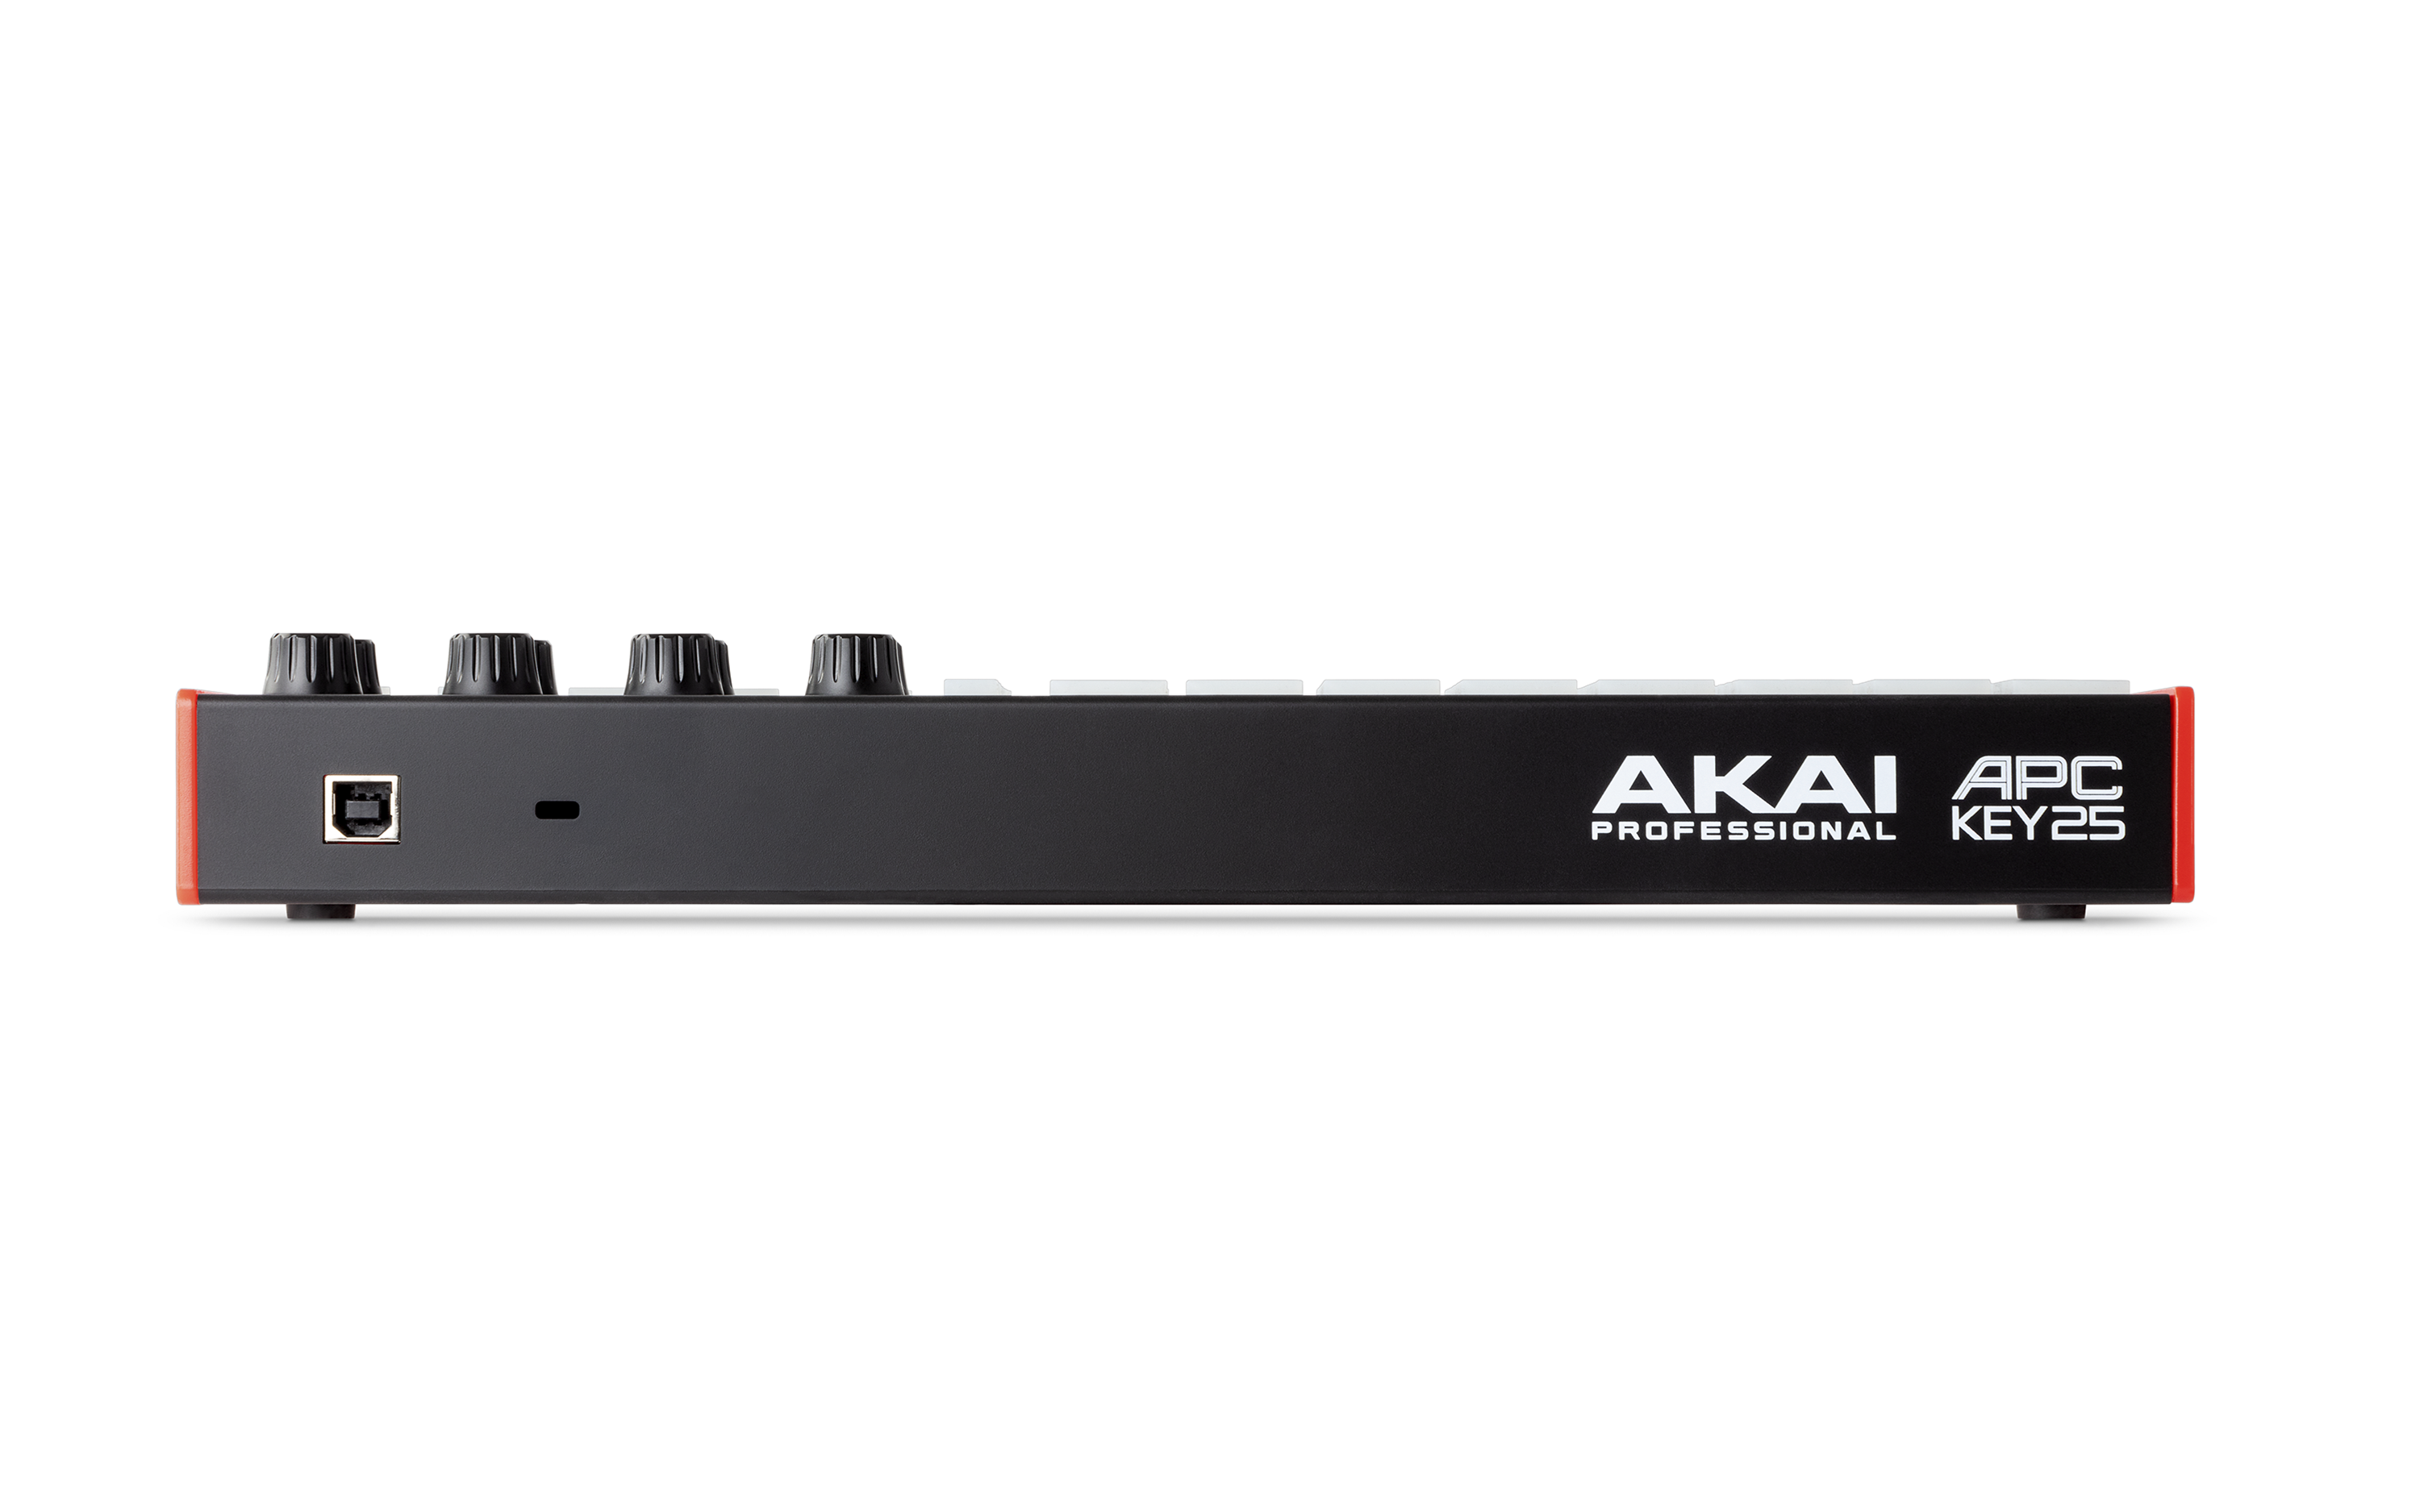 製品情報：APC Key 25 MK2：AKAI professional